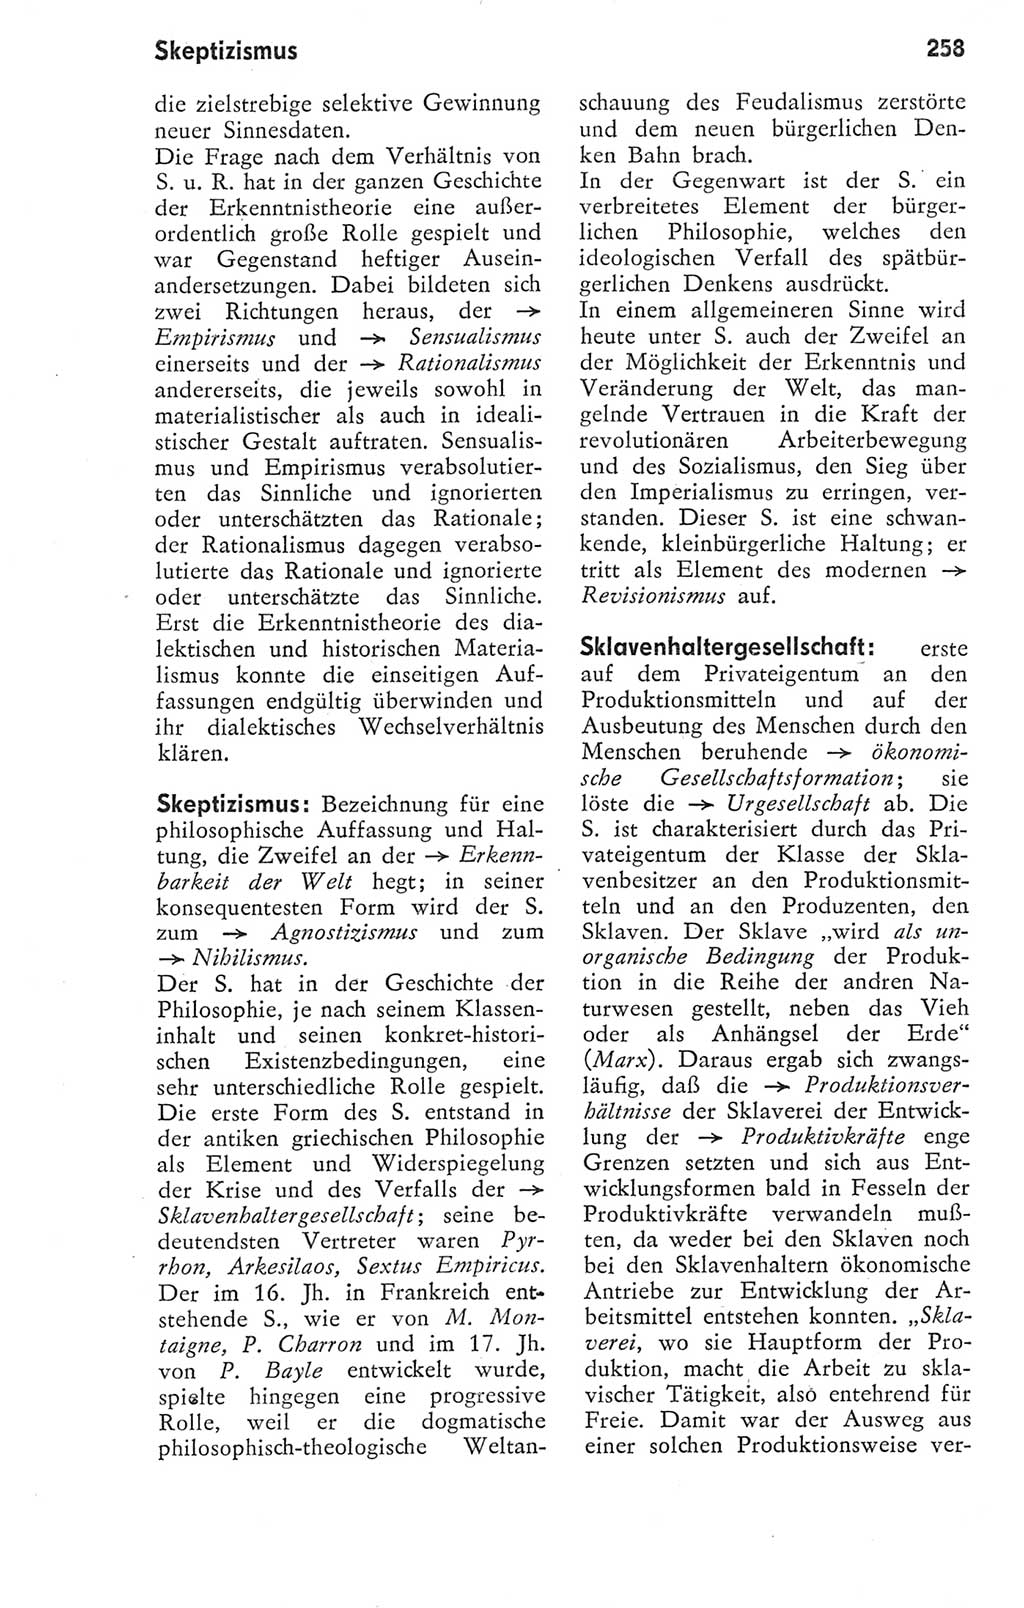 Kleines Wörterbuch der marxistisch-leninistischen Philosophie [Deutsche Demokratische Republik (DDR)] 1974, Seite 258 (Kl. Wb. ML Phil. DDR 1974, S. 258)